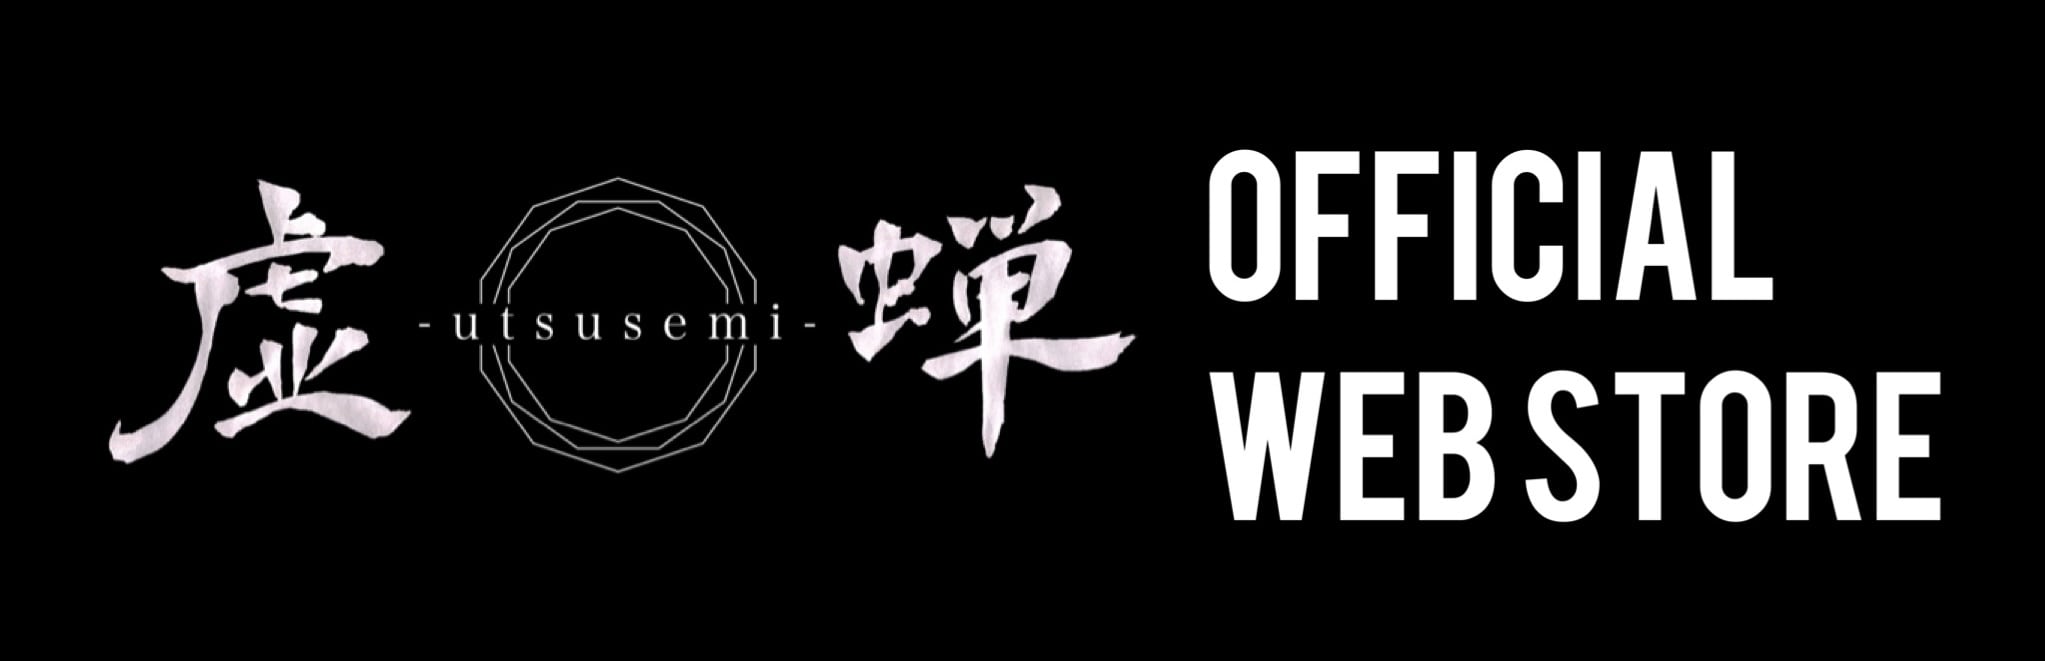 虚蝉-utsusemi- official web store